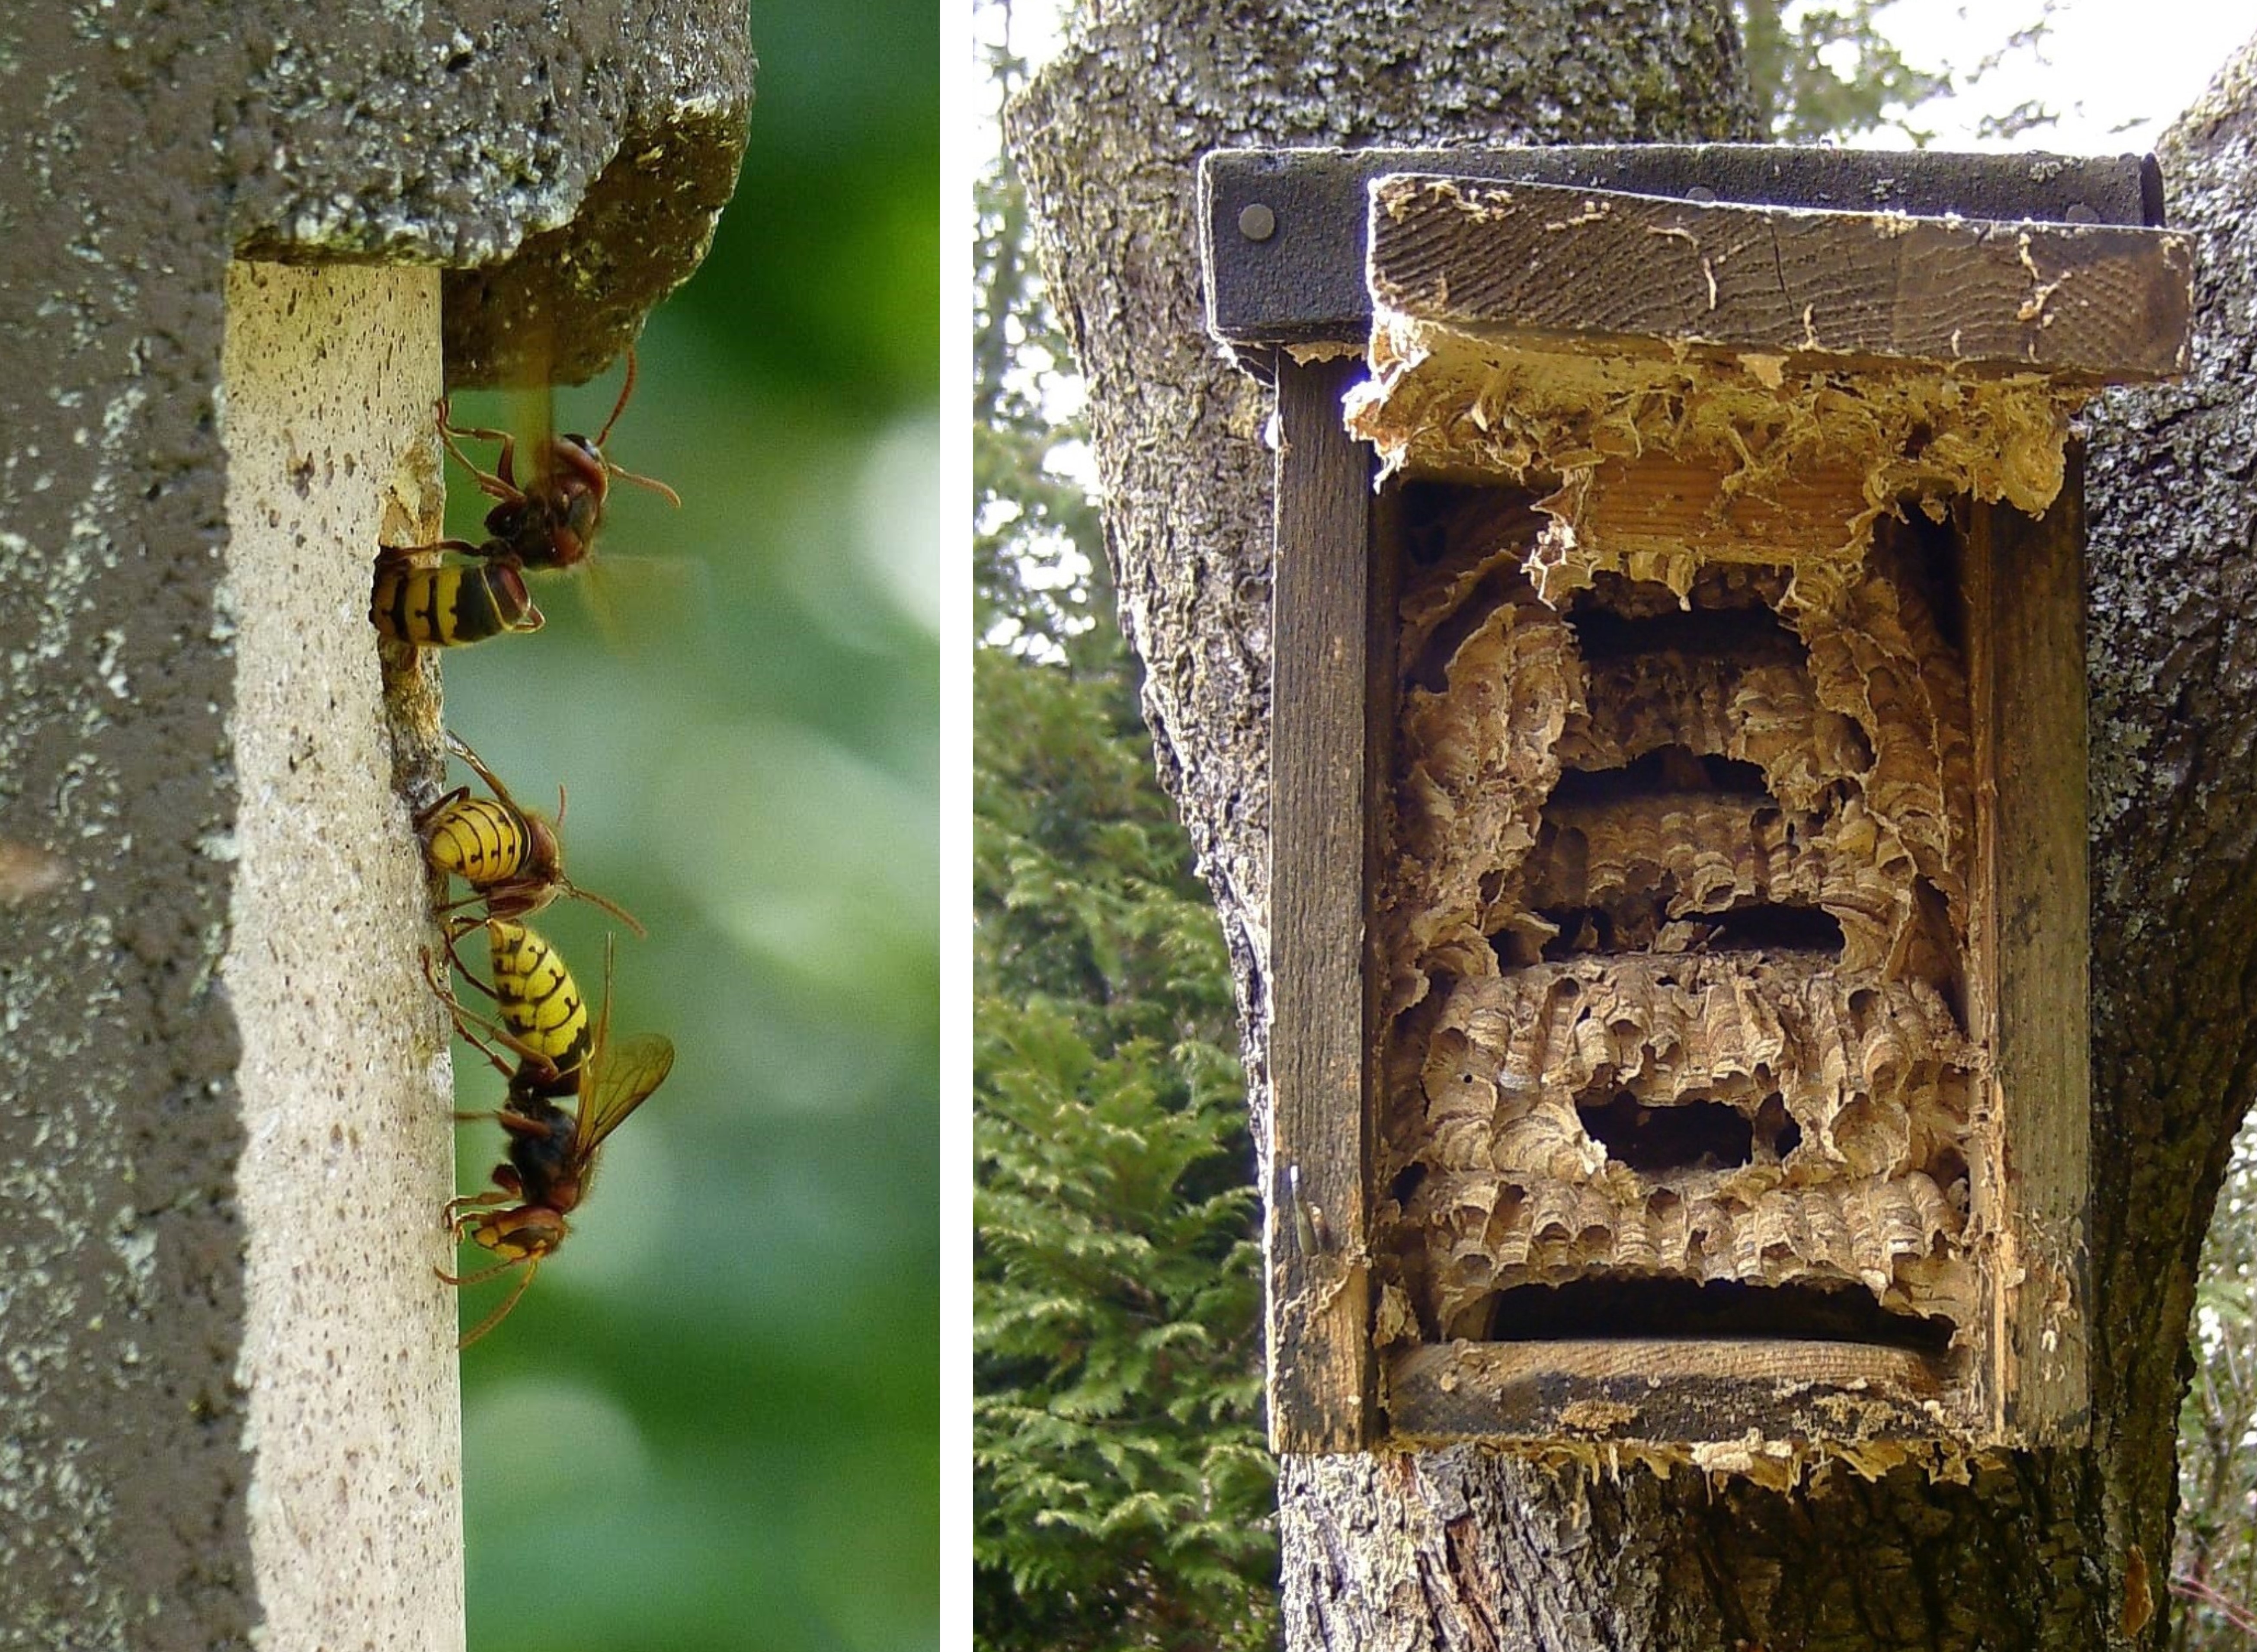 European hornet nests